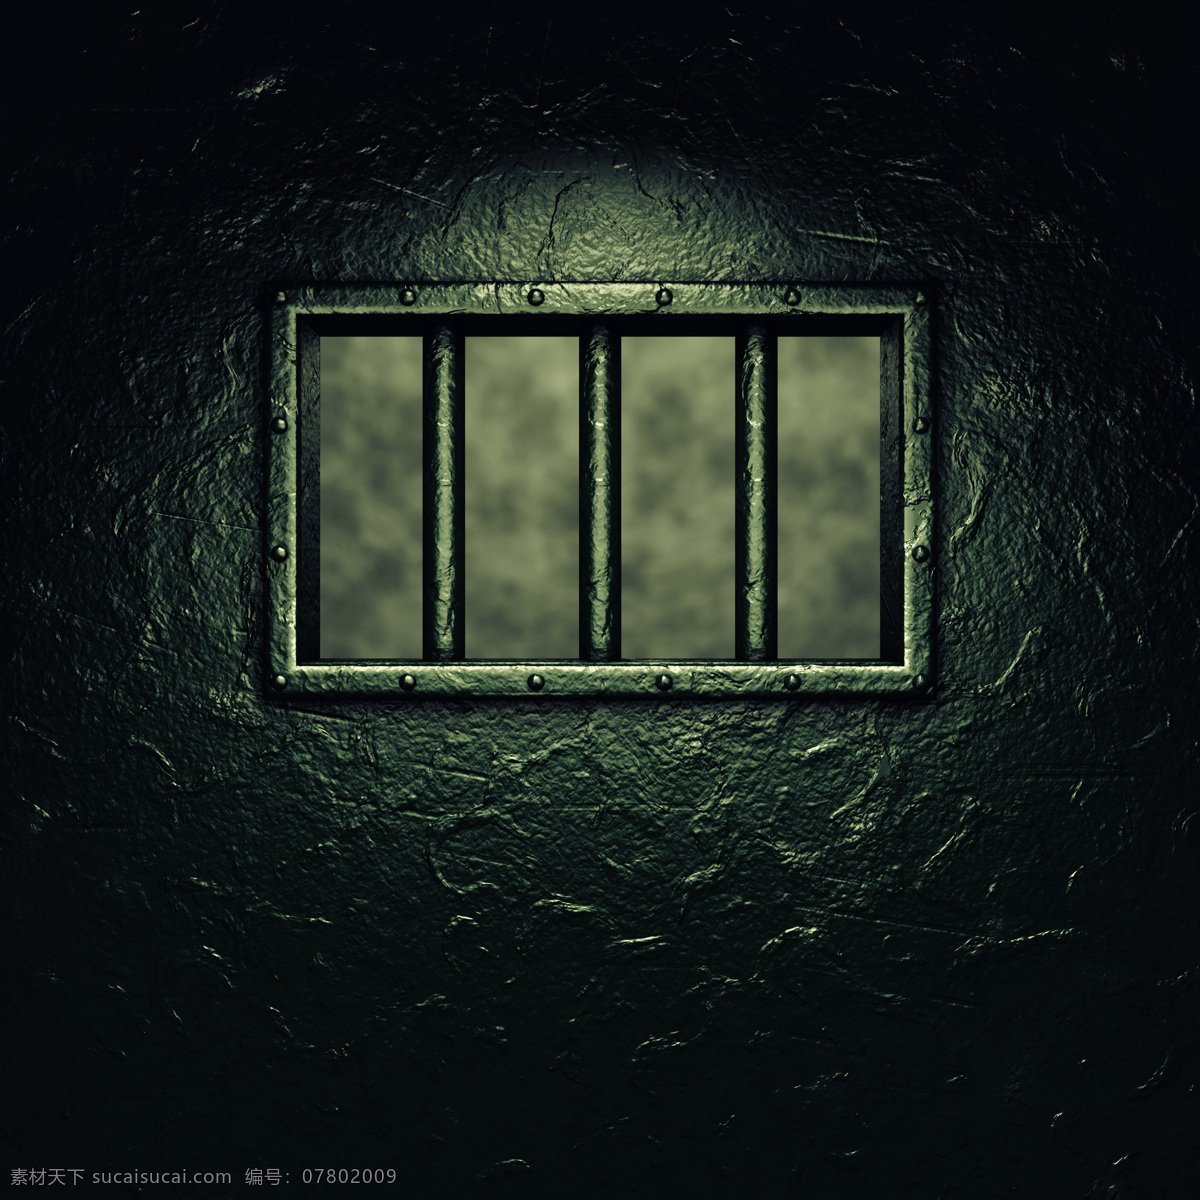 监狱牢笼 监狱 牢笼 铁门 入狱 铁床 罪犯 法律 法律图片 法律素材 司法 司法图片 司法素材